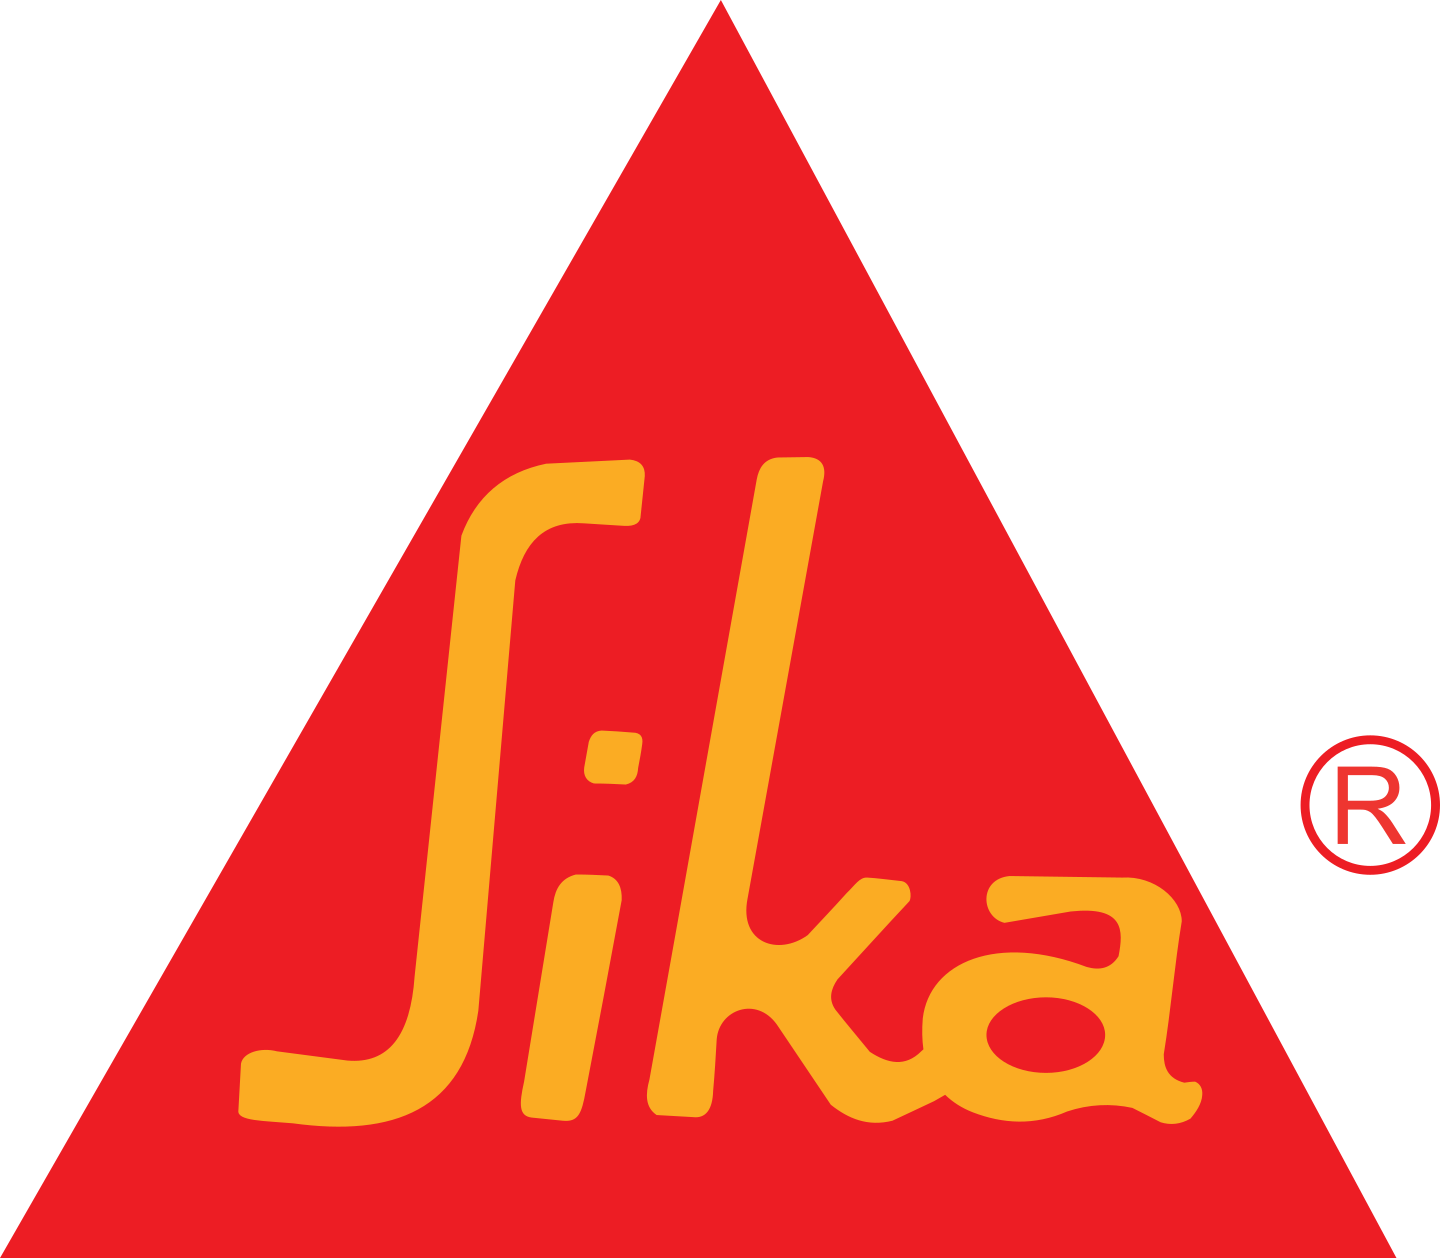 sika logo 2 - Sika Logo